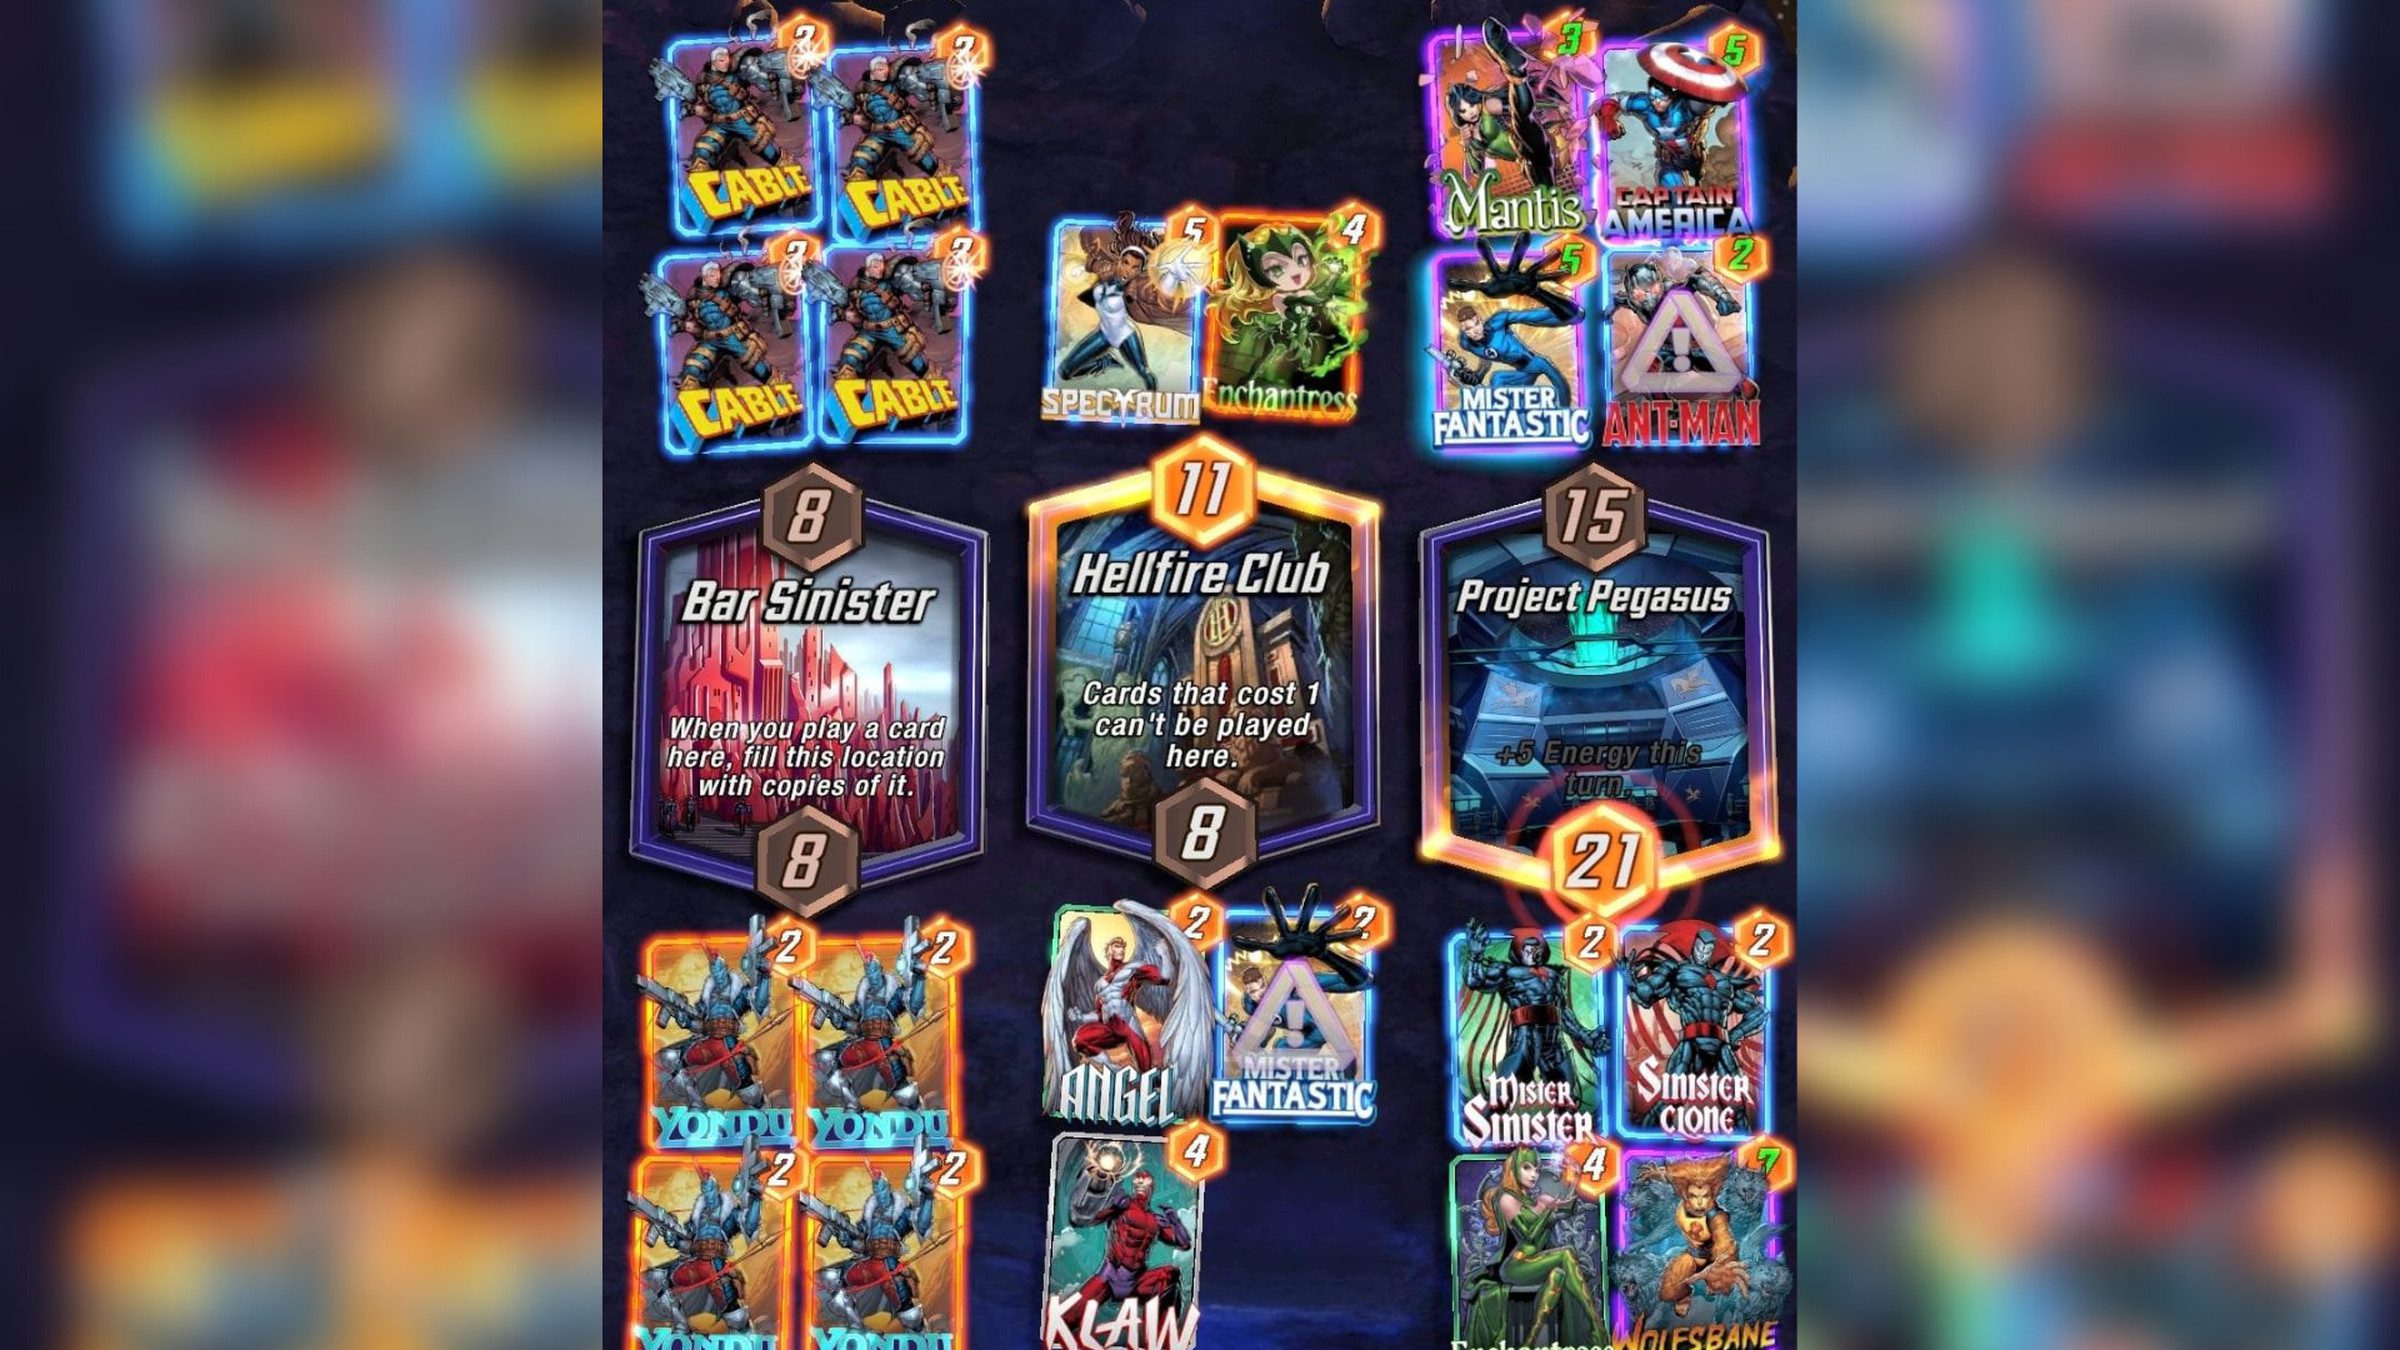 لقطة شاشة من طريقة اللعب من Marvel Snap تتميز بثلاثة مواقع بتأثيرات مختلفة محاطة على كلا الجانبين بمساحات تصل إلى البطاقات